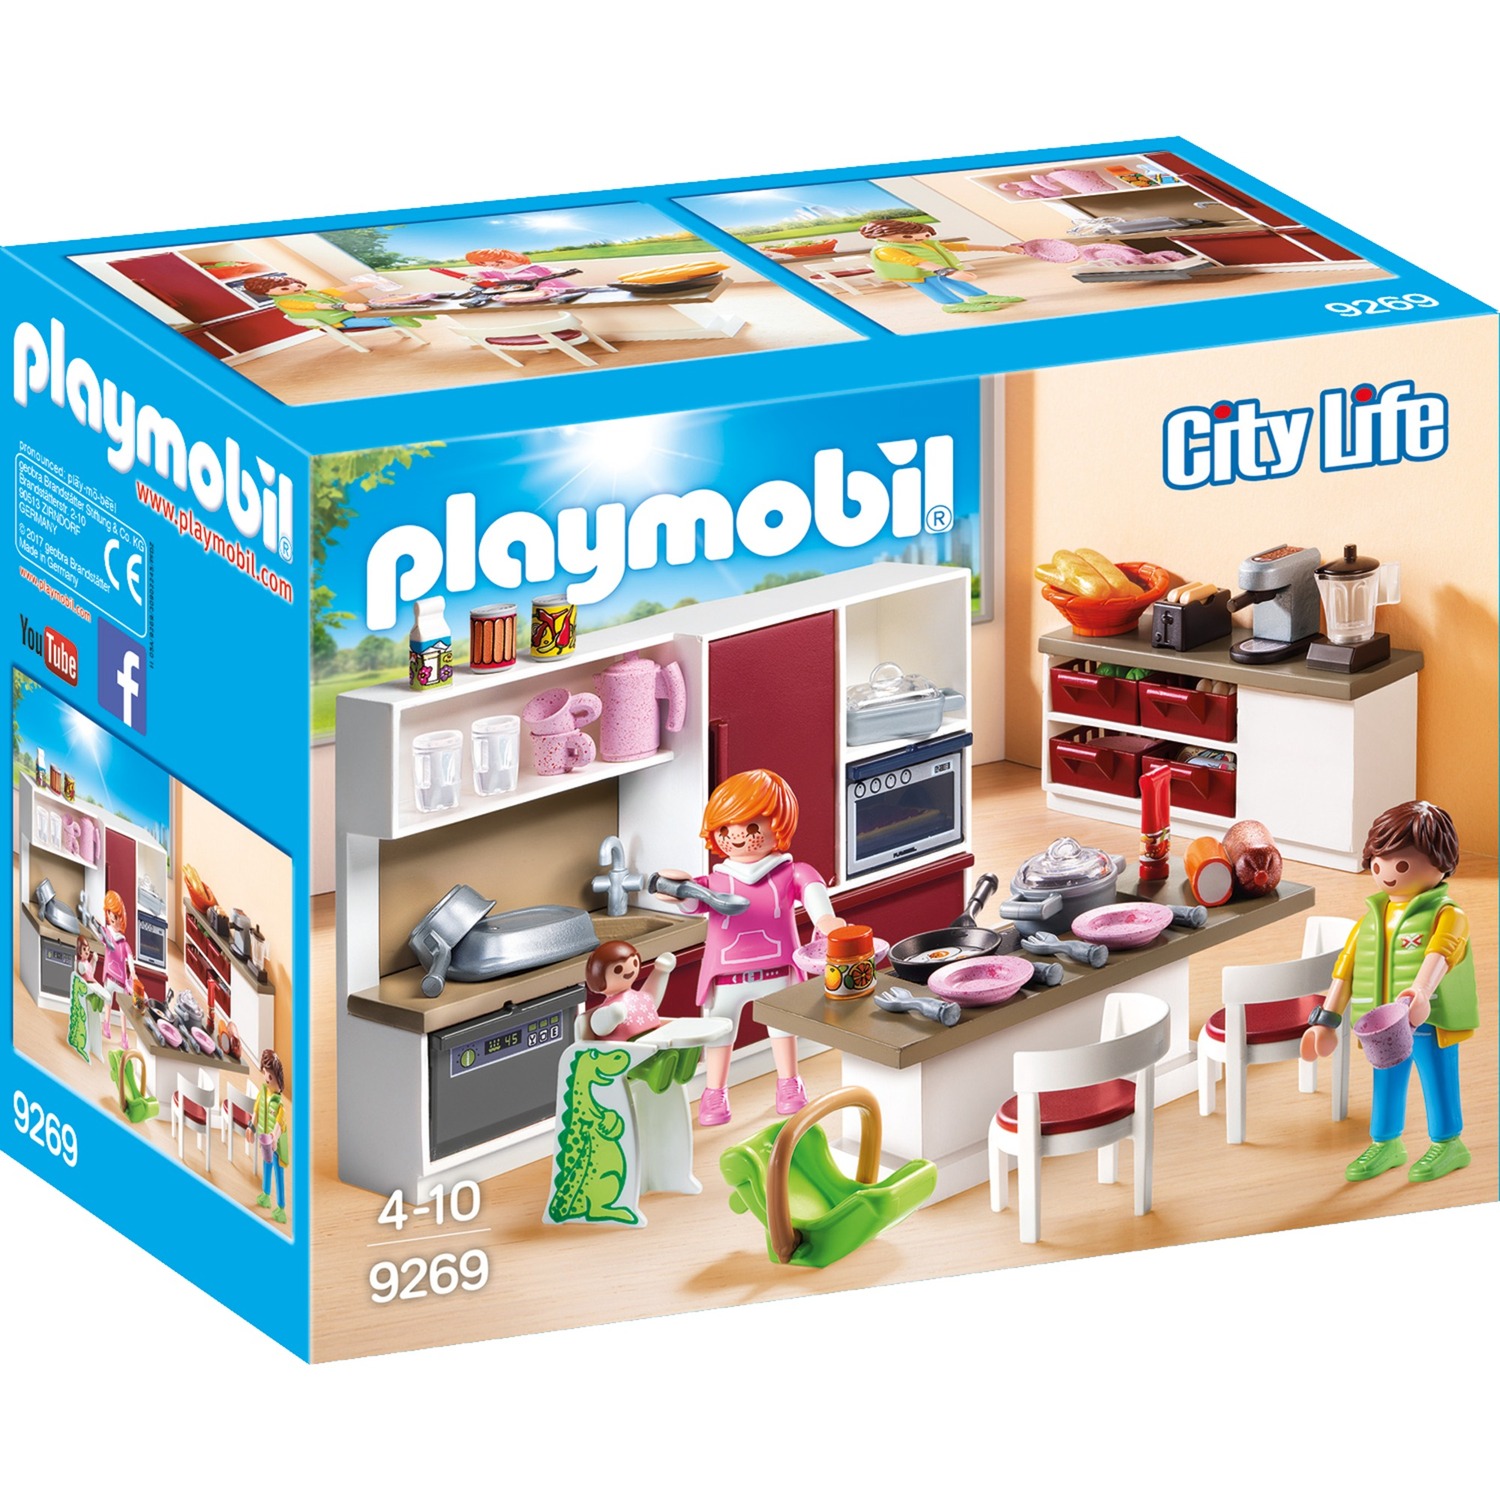 Spielzeug: PLAYMOBIL 9269 Große Familienküche